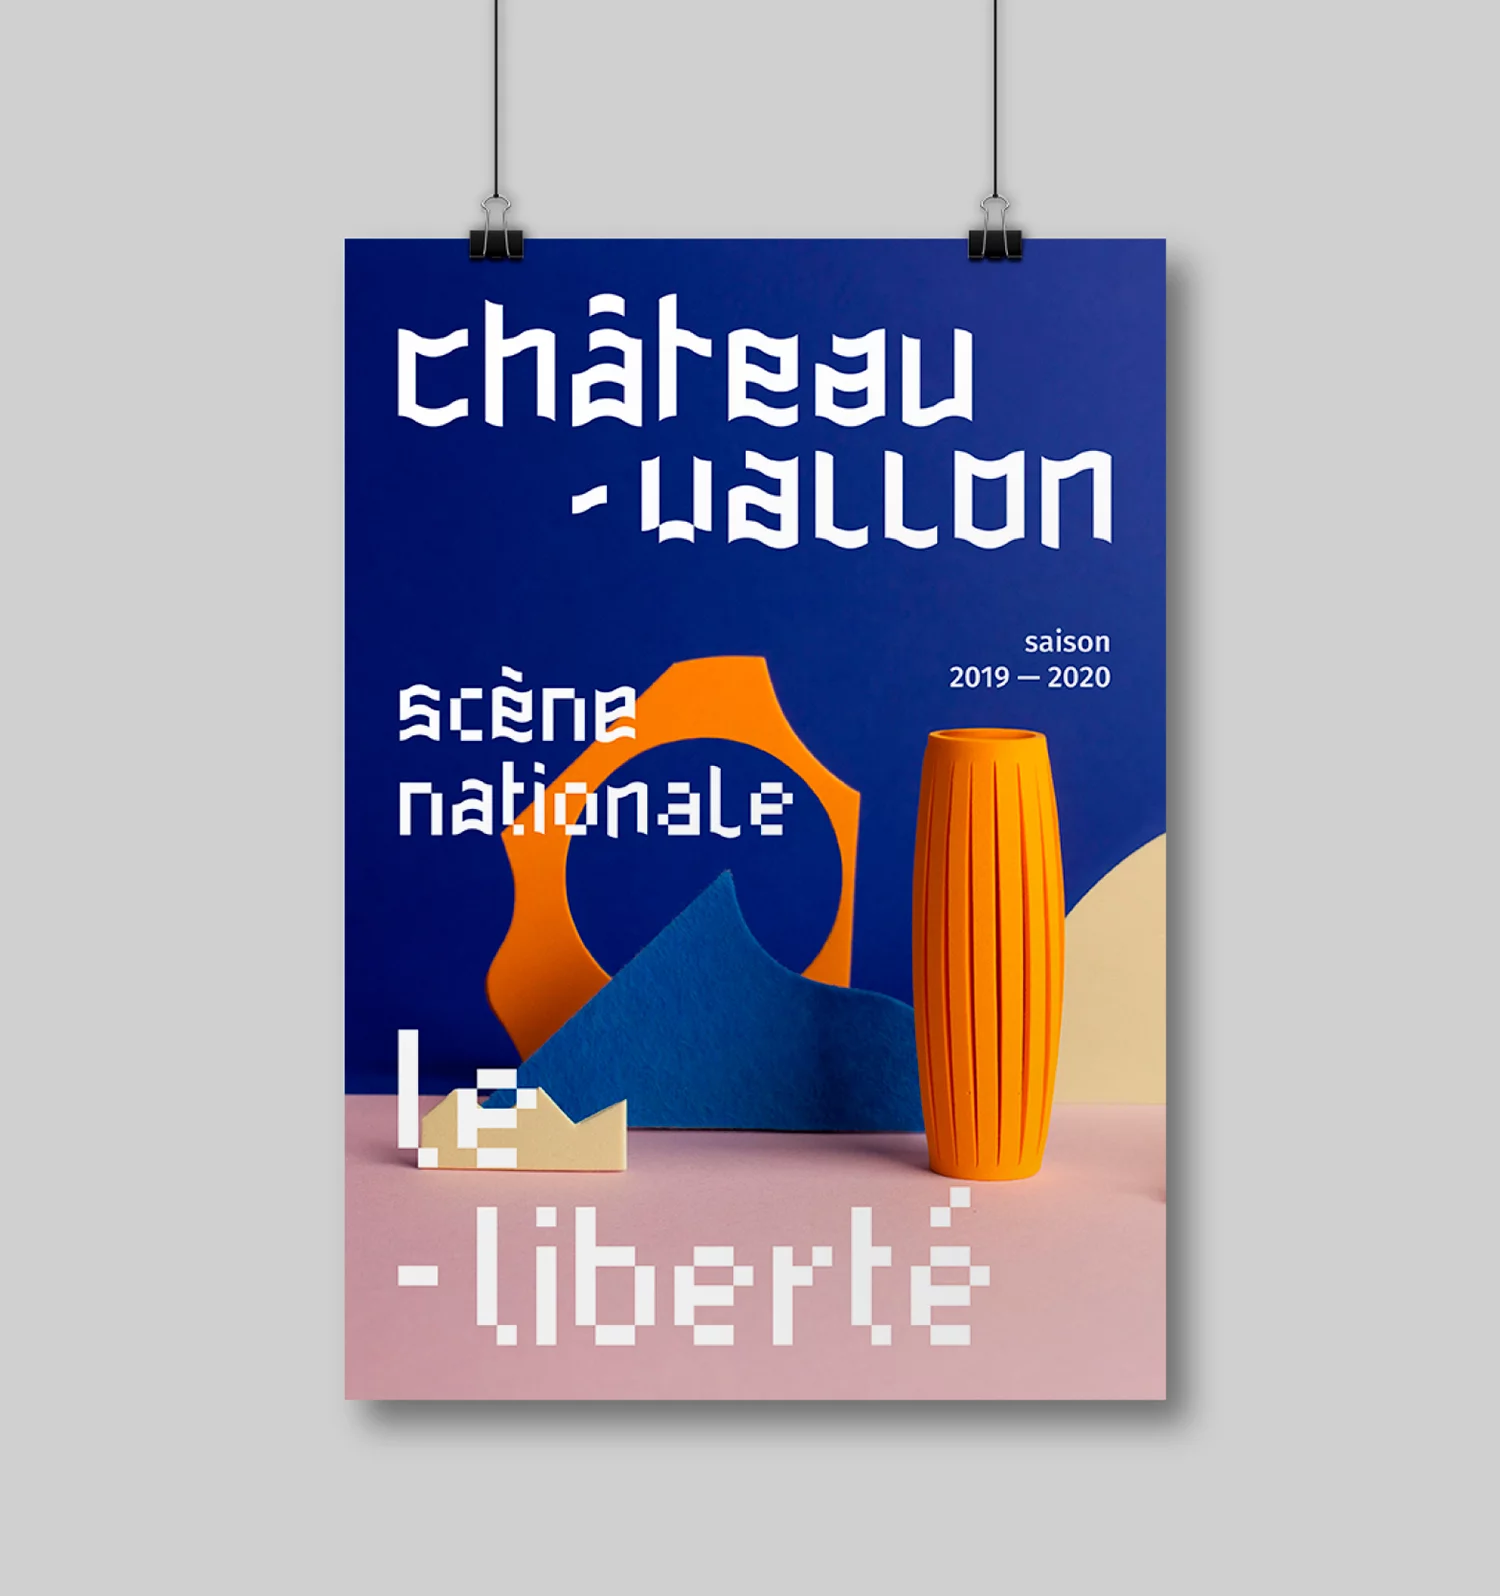 Affiche de la Scène Nationale Châteauvallon-Liberté, avec une photo d'une composition mêlant objets absraits arrondis et angulaires